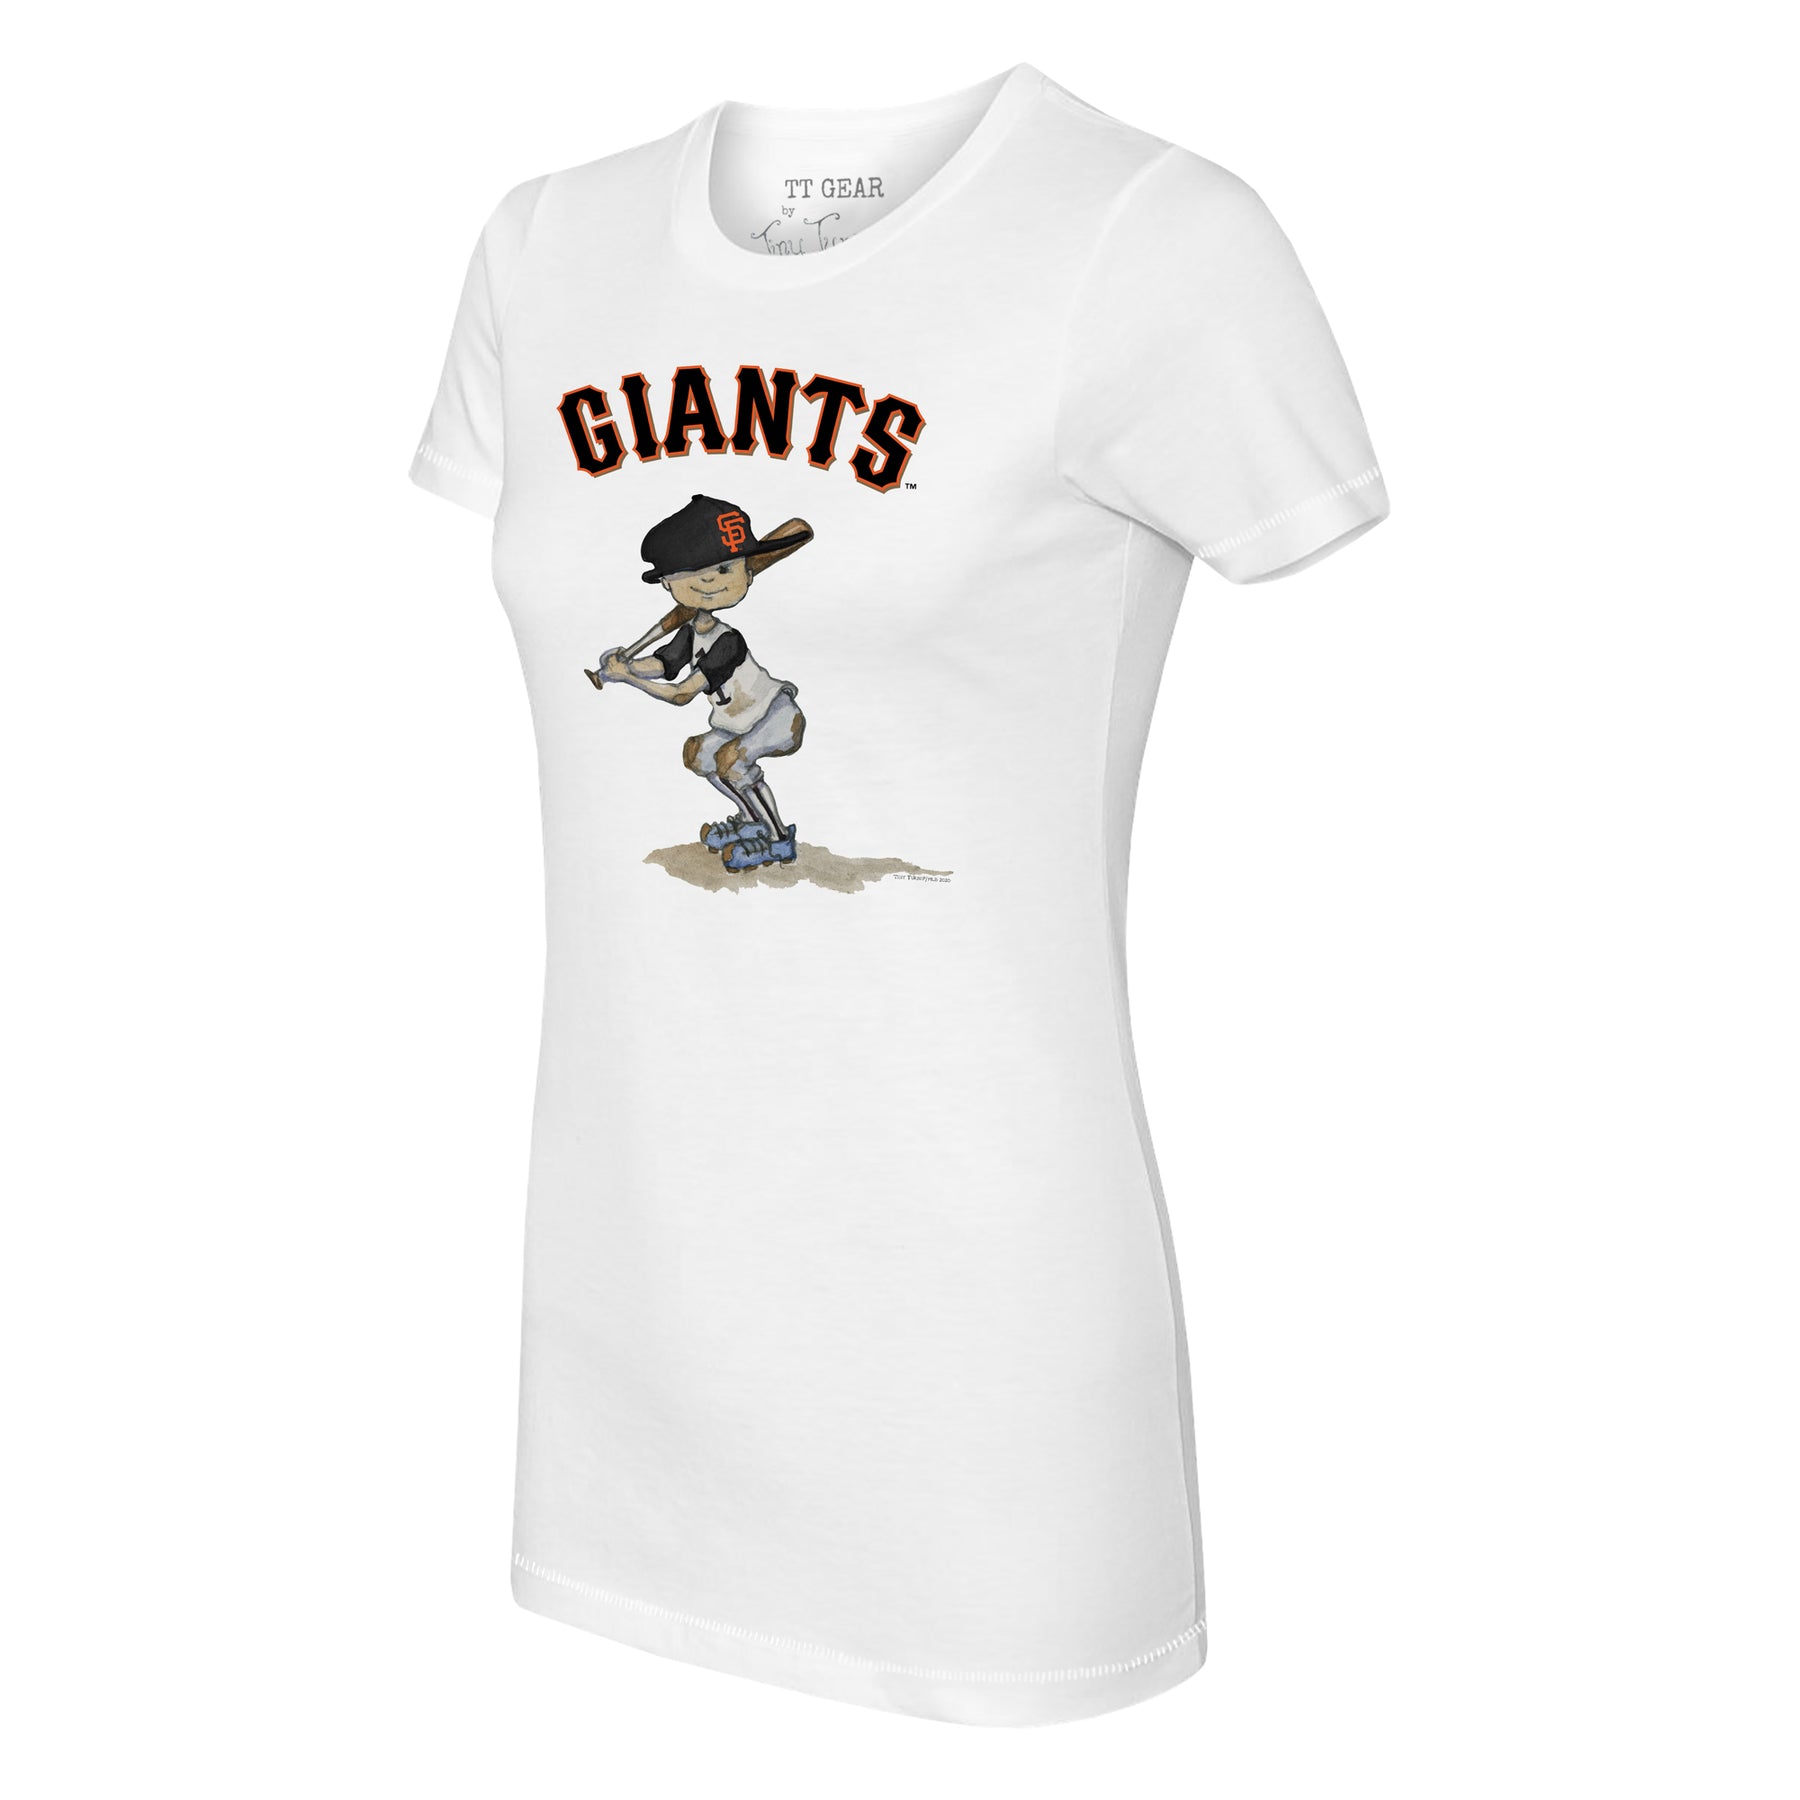 San Francisco Giants Gear, Giants Merchandise, Giants Apparel